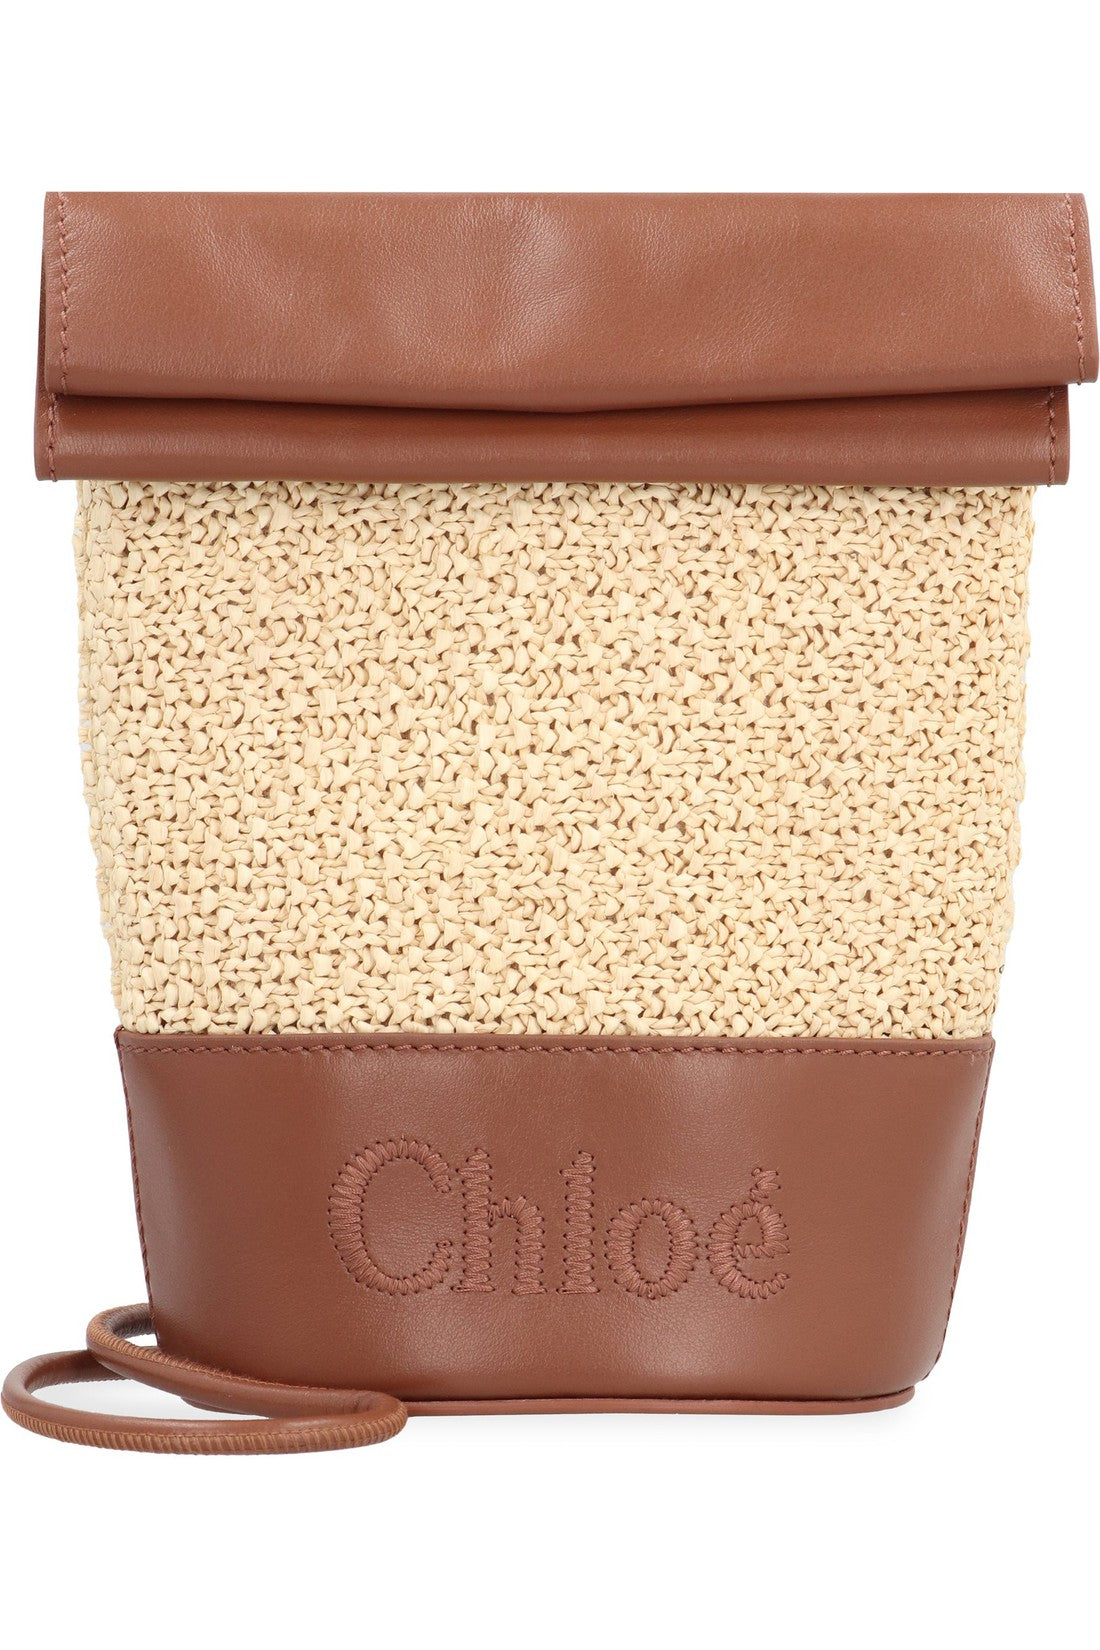 Chloé-OUTLET-SALE-Sense Bucket bag-ARCHIVIST